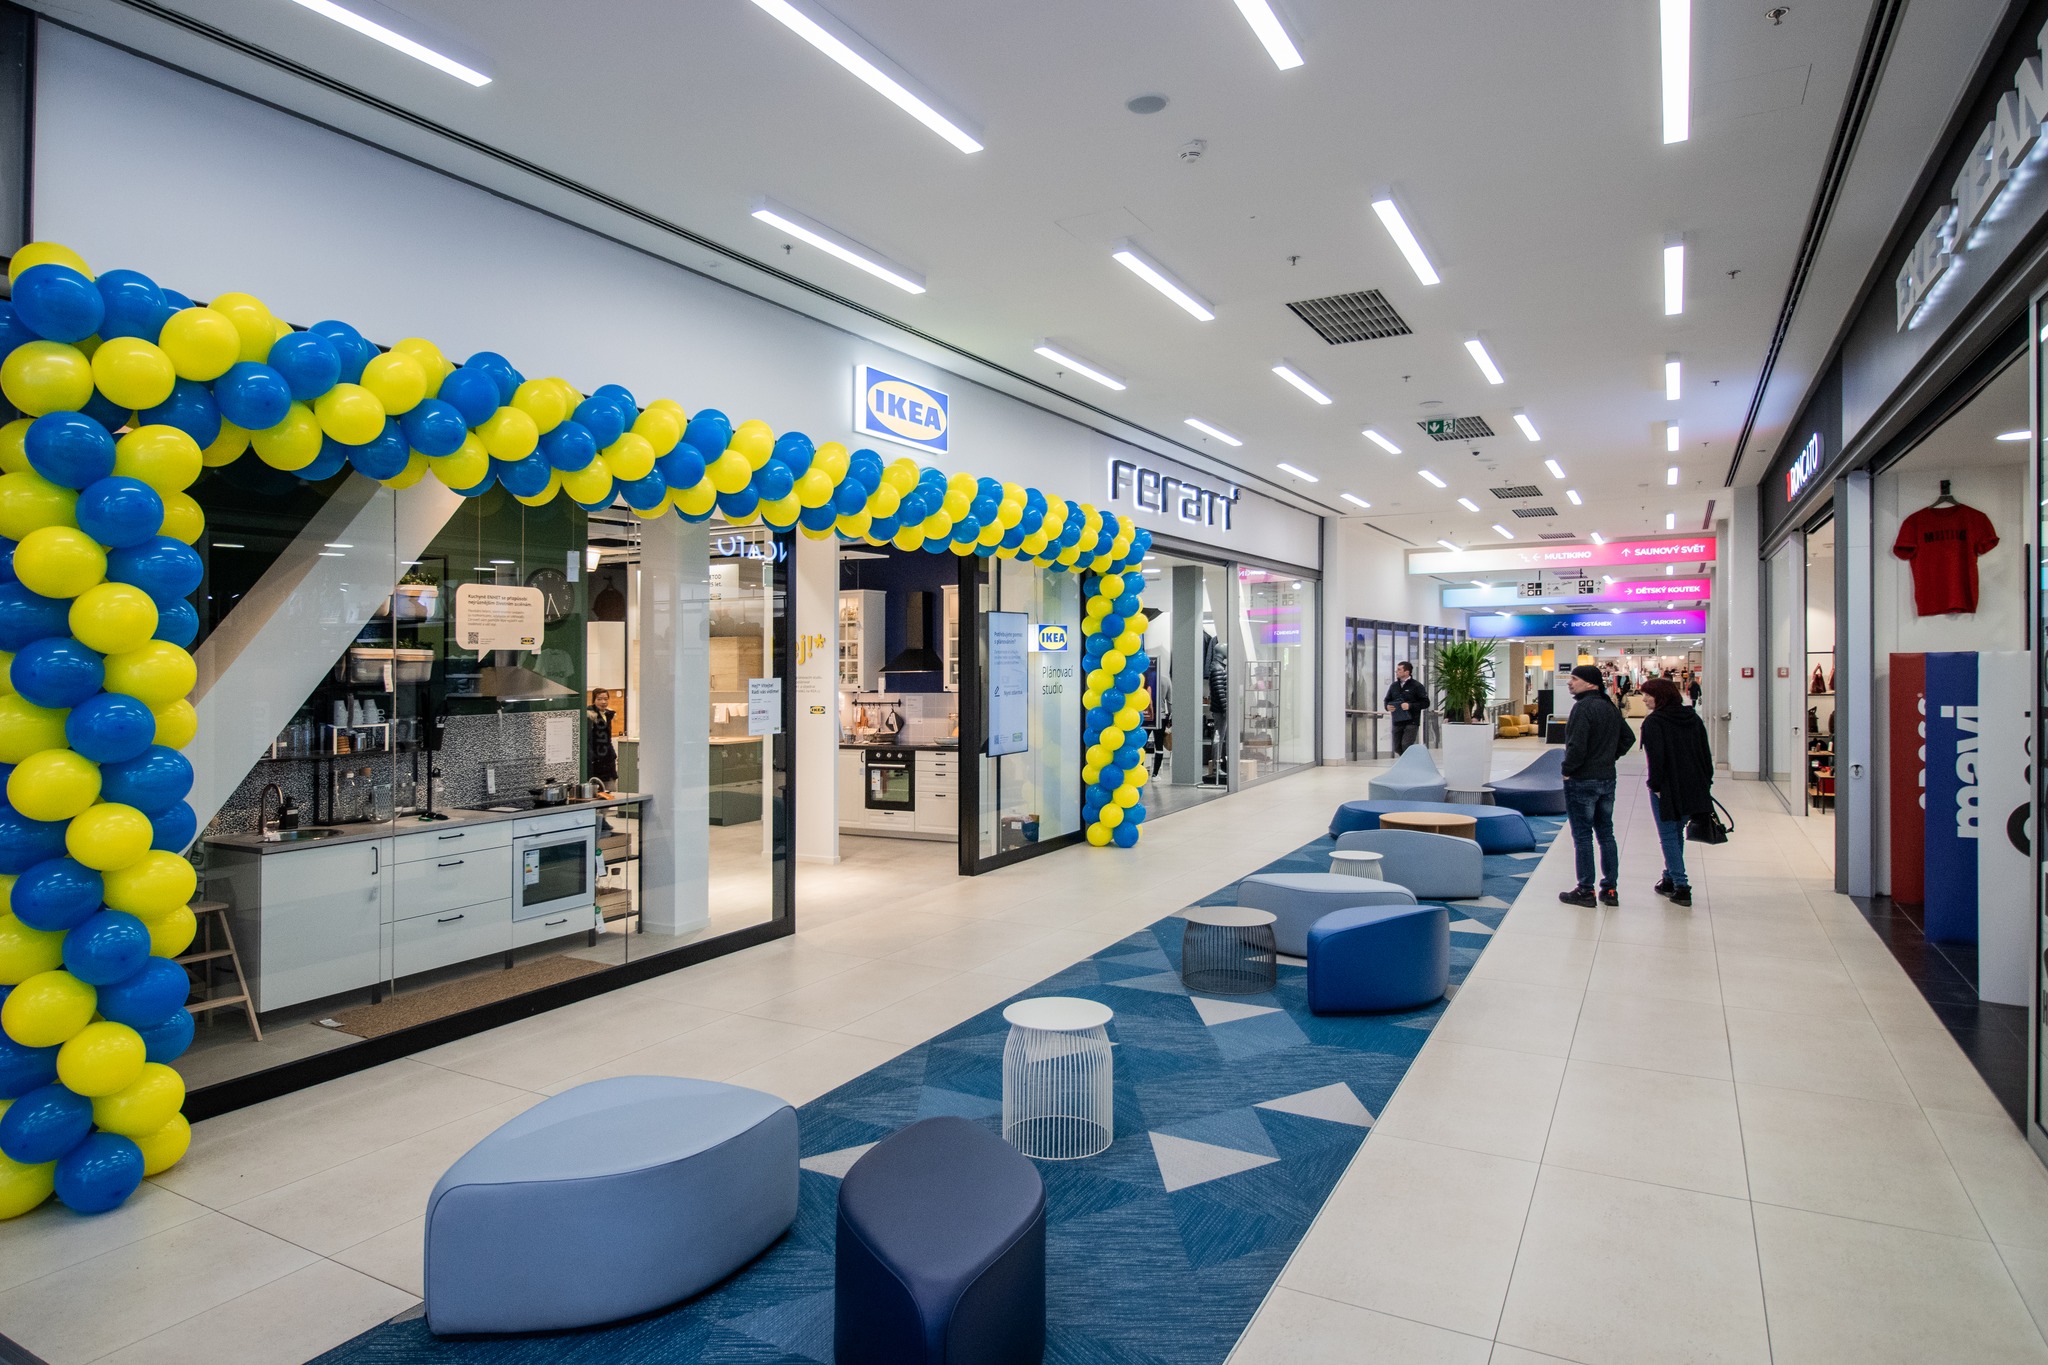 IKEA je novým nájemcem obchodního centra IGY